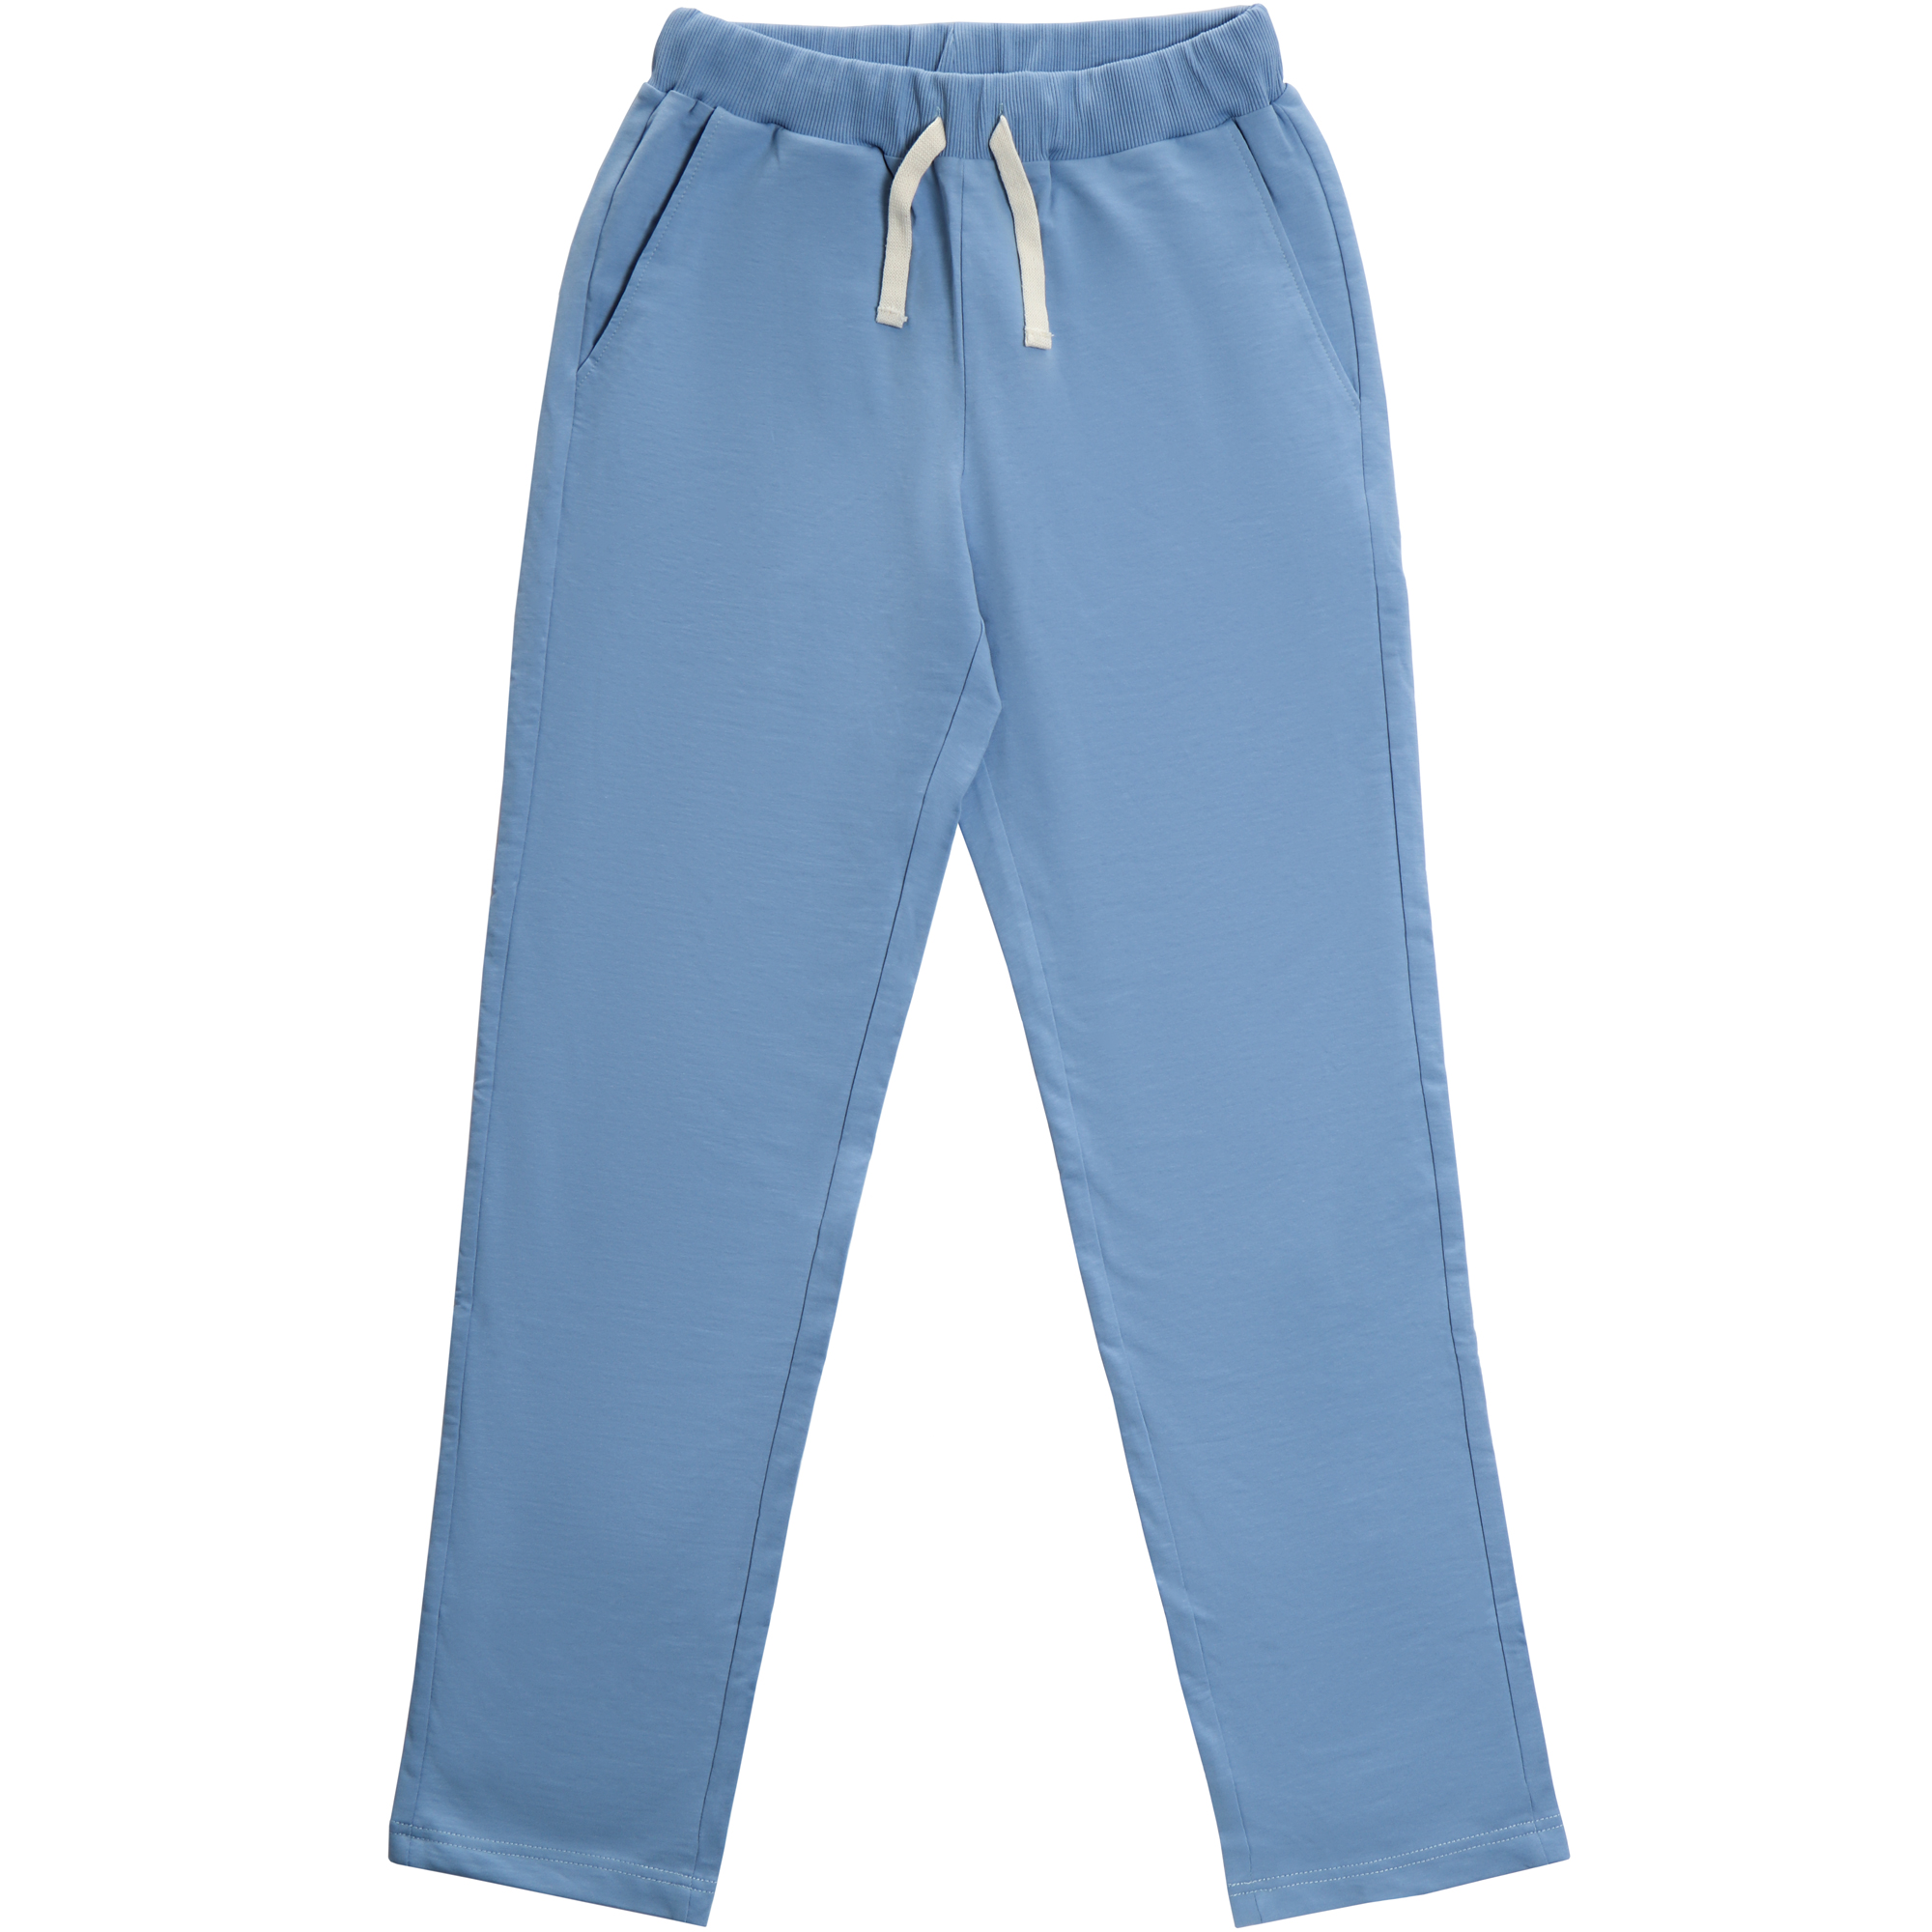 Мужские брюки Birlik голубые, цвет голубой, размер M - фото 1